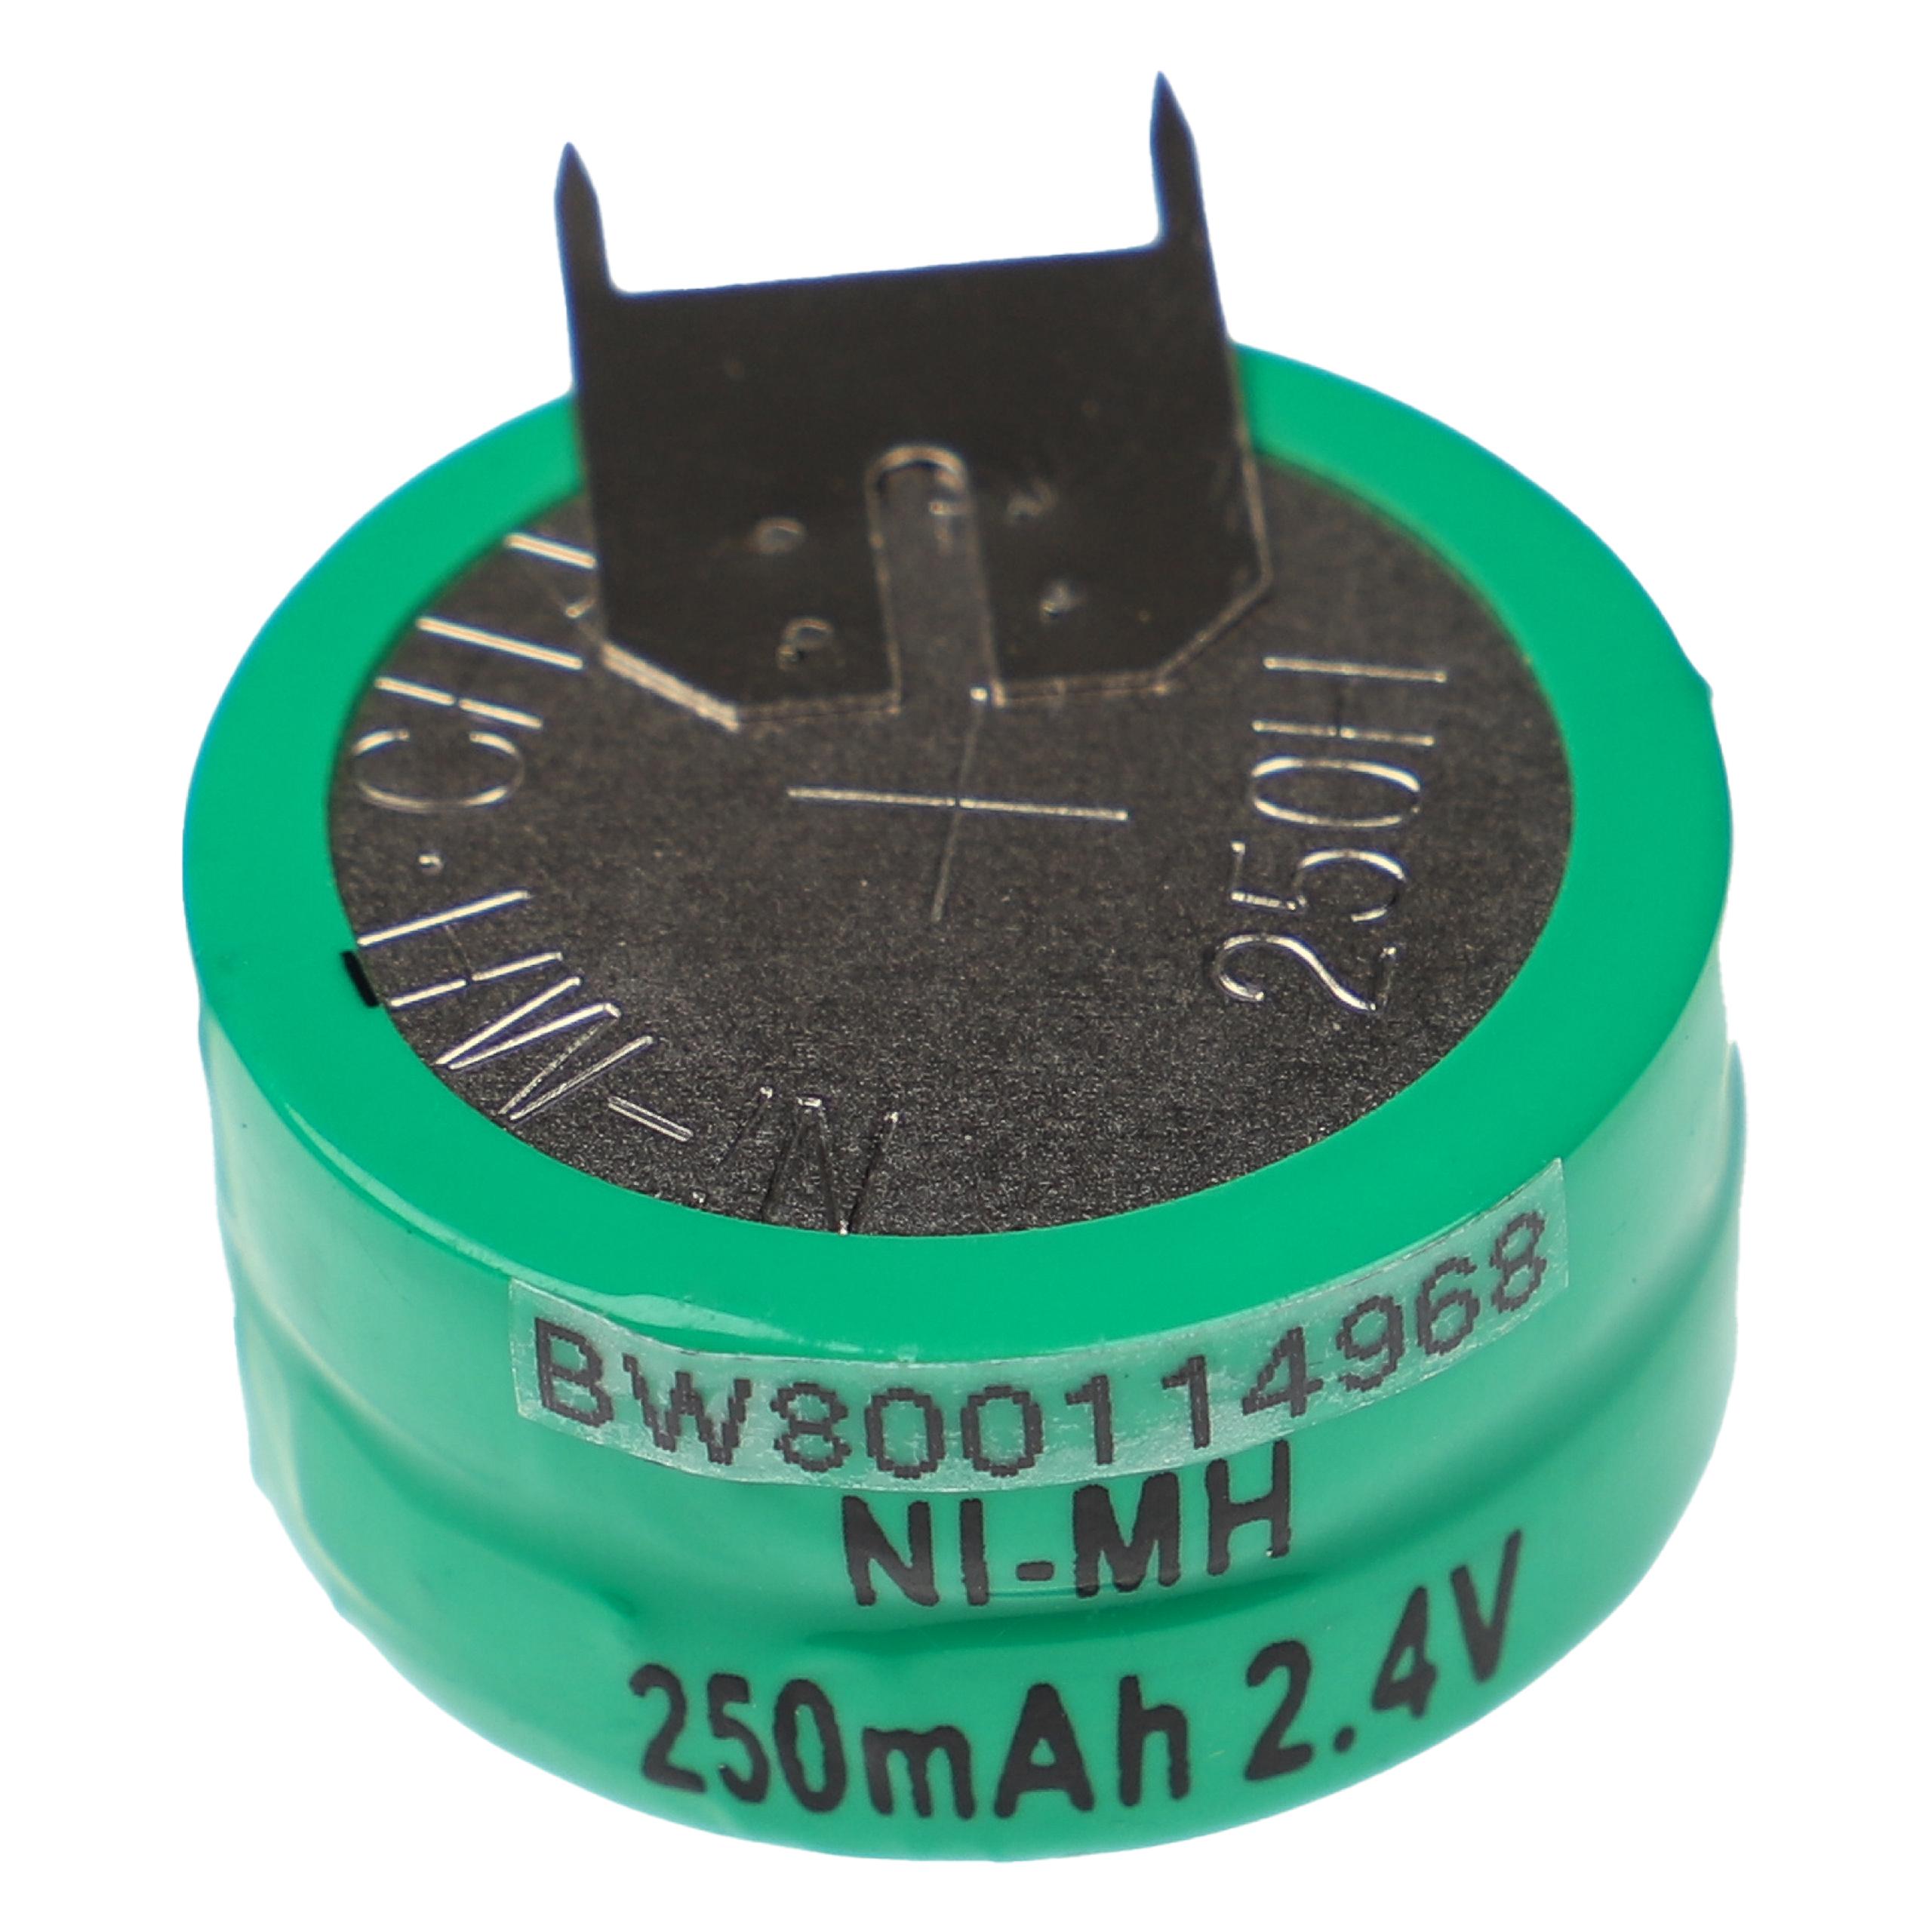 Batteria a bottone (2x cella) tipo 2/V250H 3 pin sostituisce 2/V250H per modellismo, luci solari ecc. 